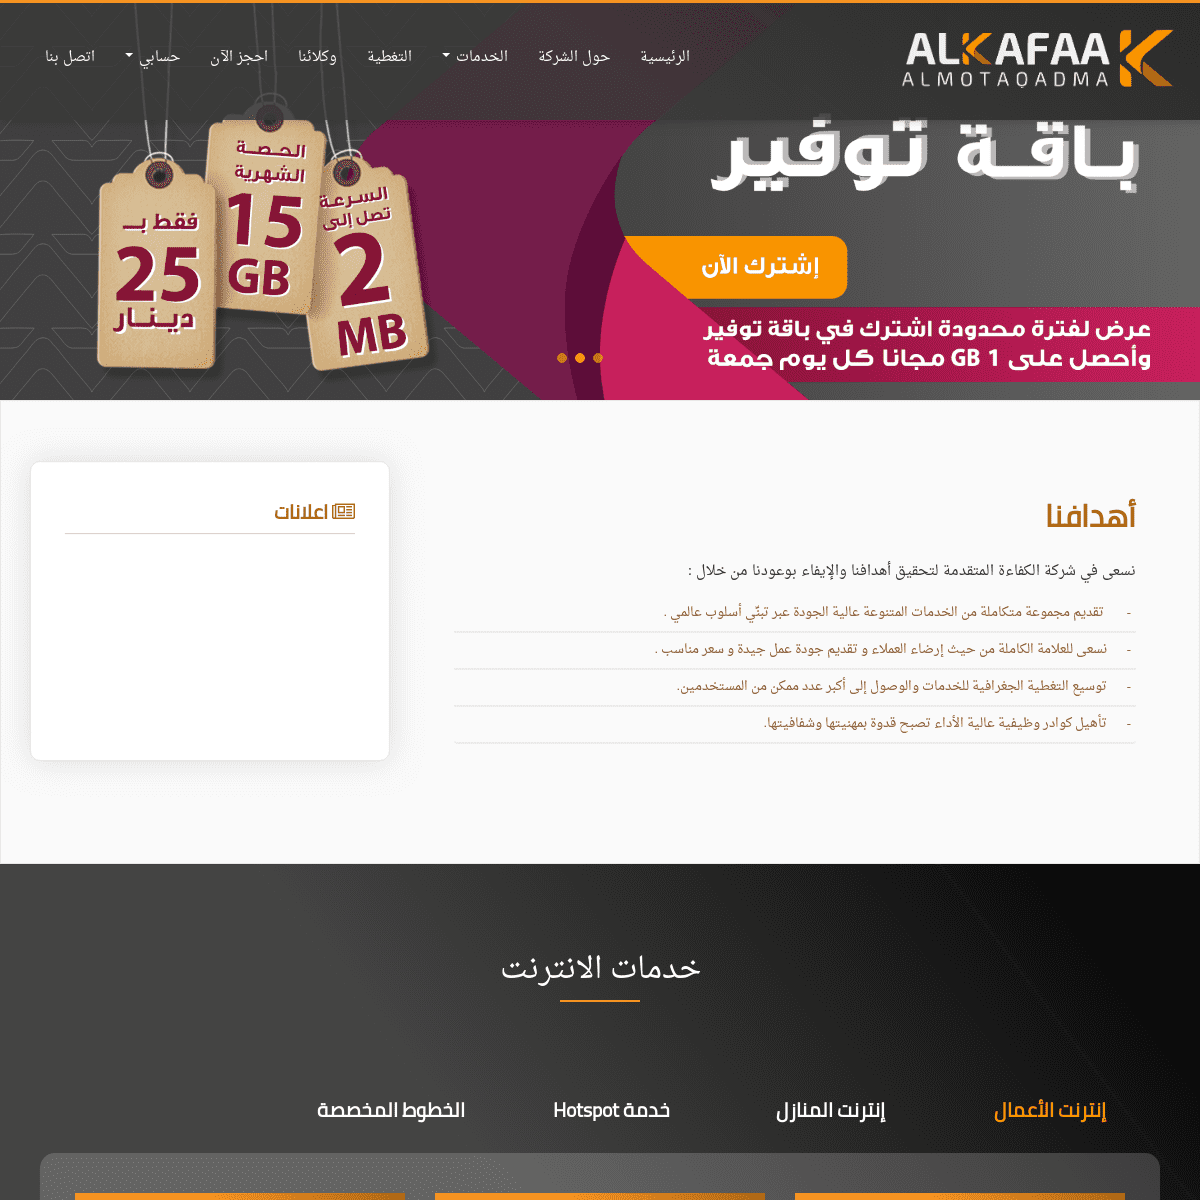 A complete backup of alkafaa.net